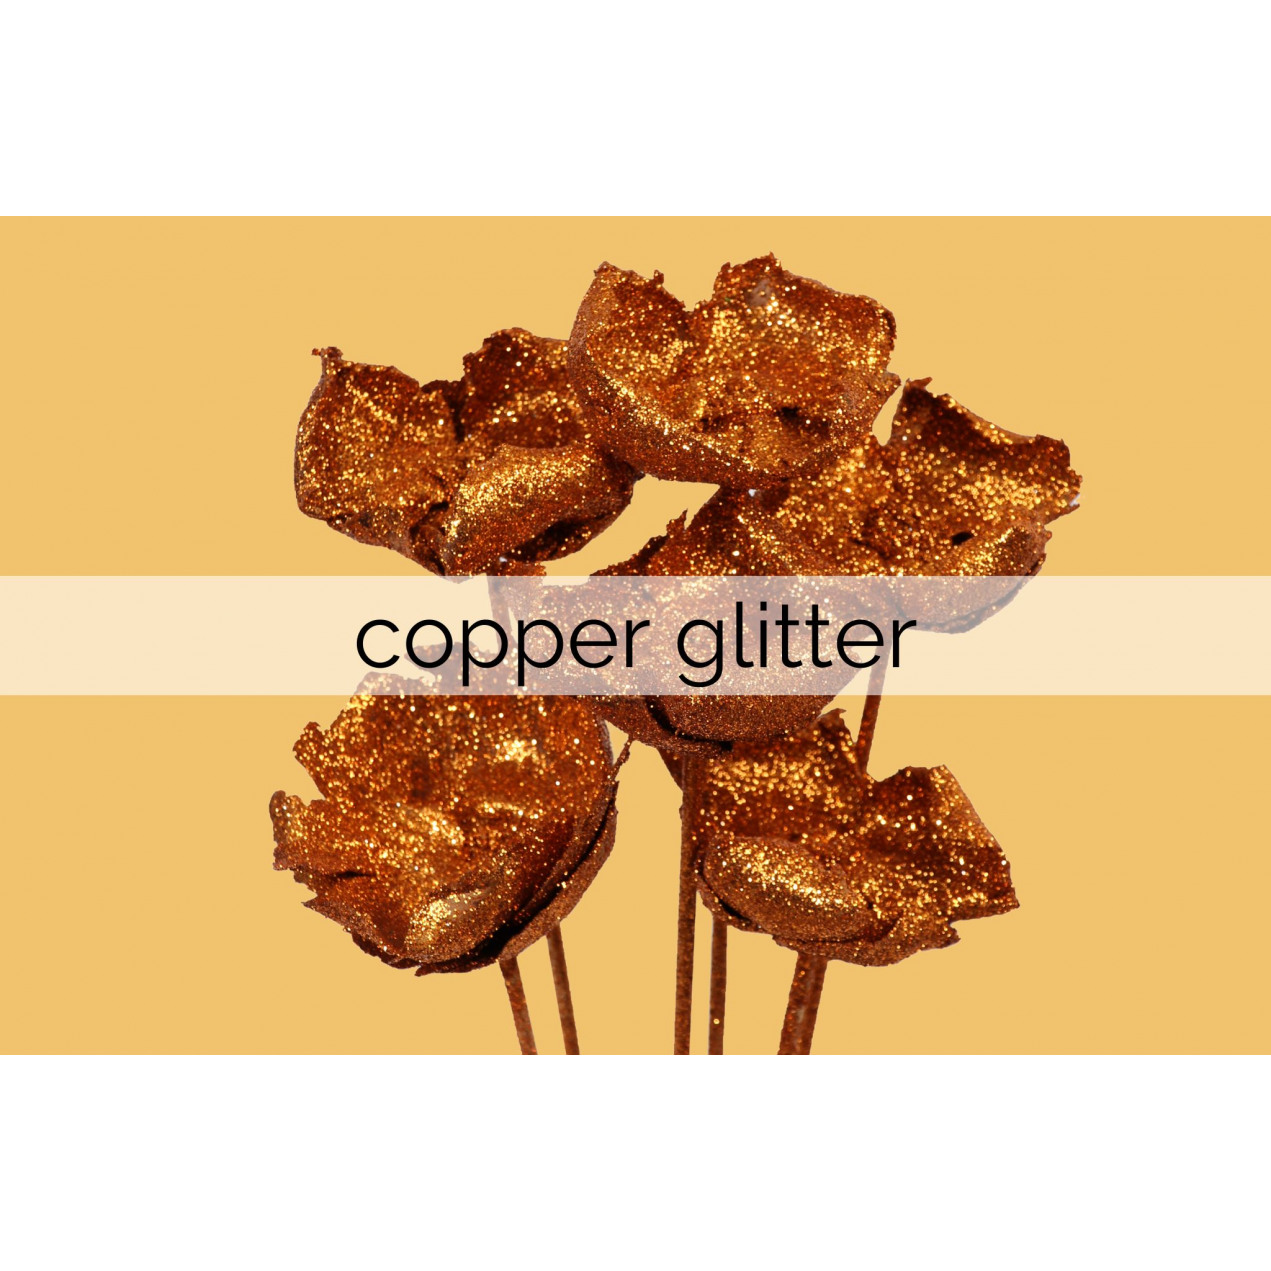 copper glitter